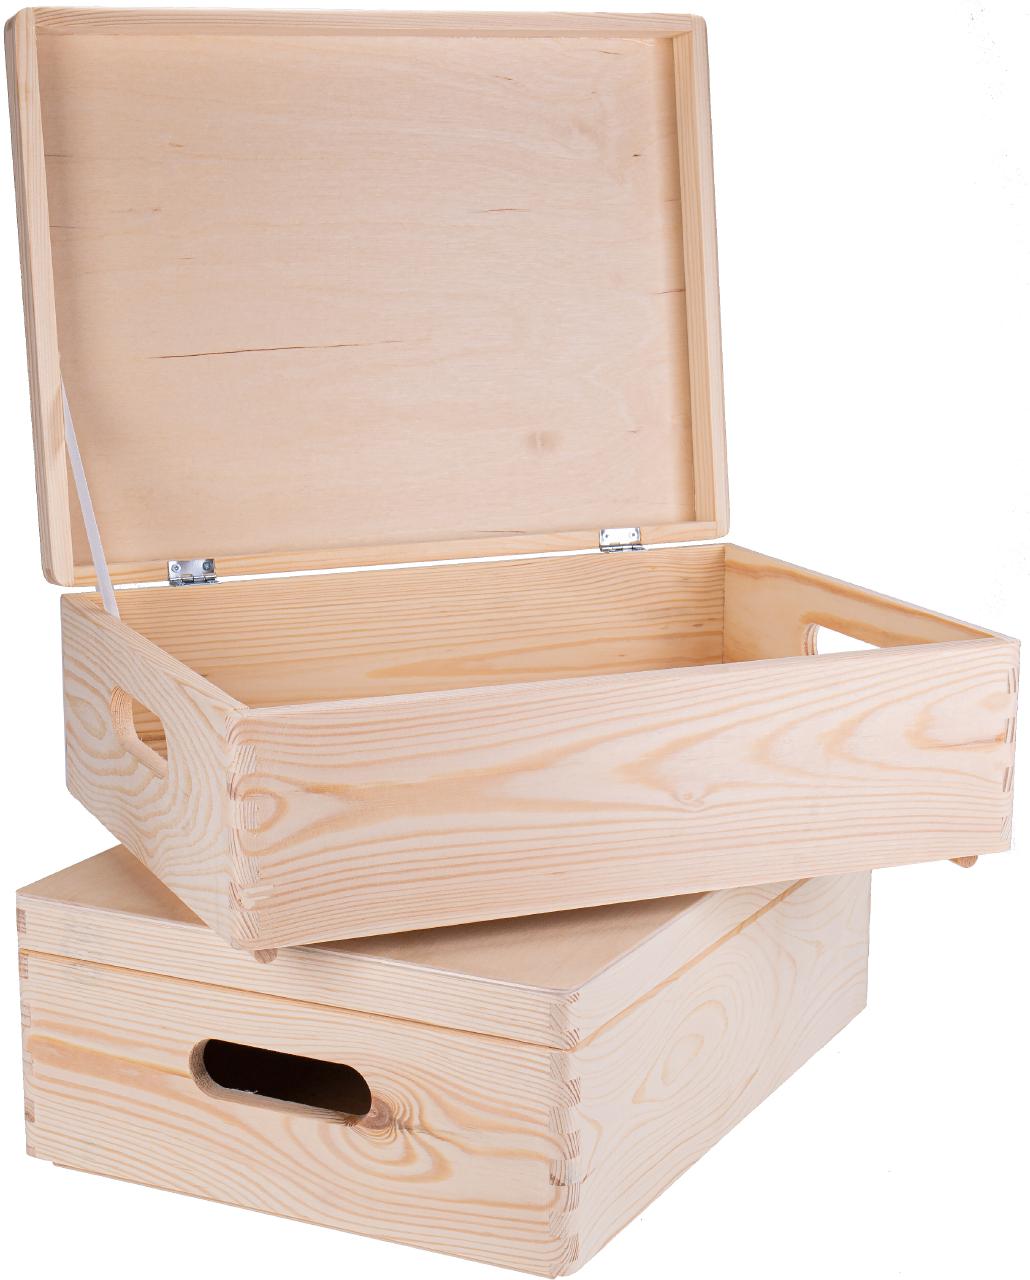 GroÃŸe Fichtenholz Kiste mit Klappdeckel und Griff